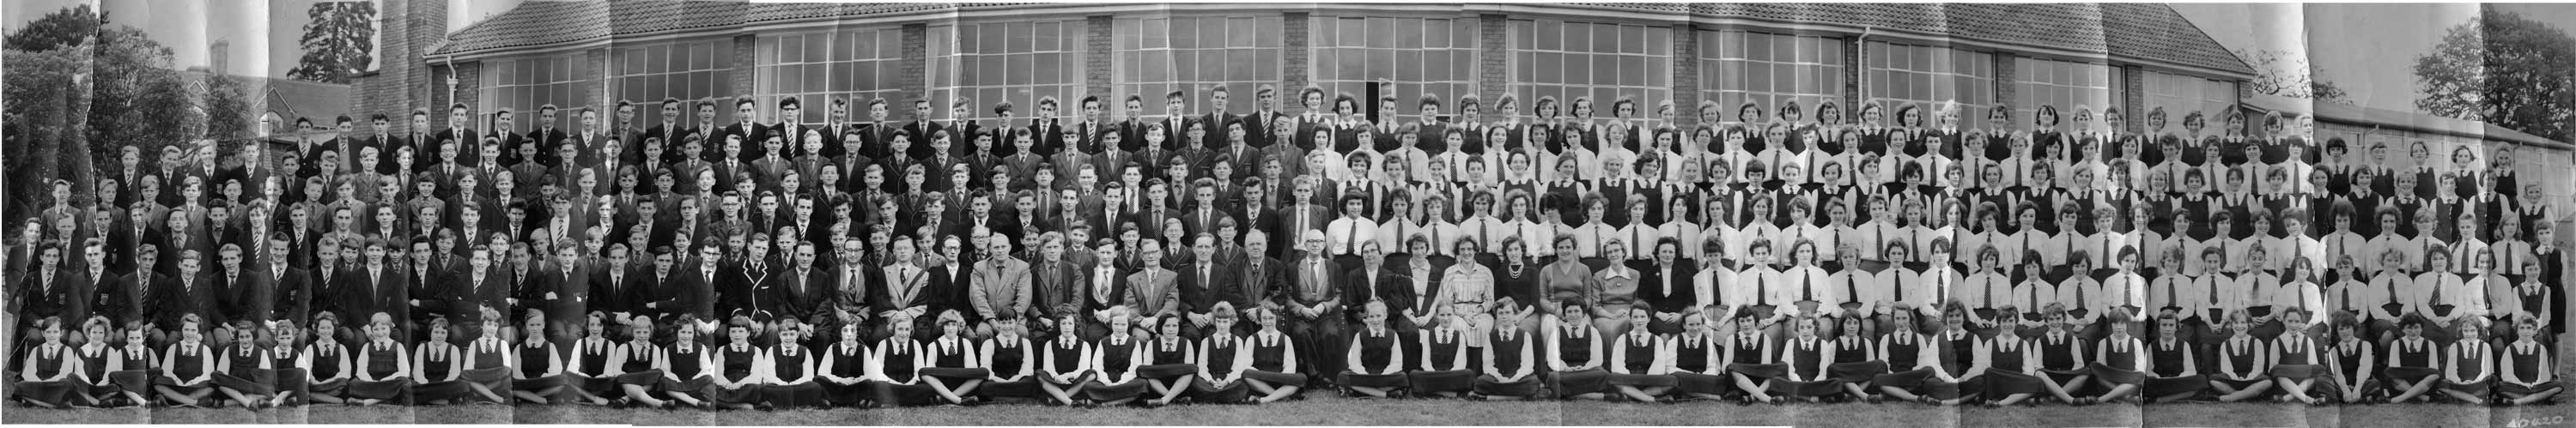 Bells School 1961 (228k)